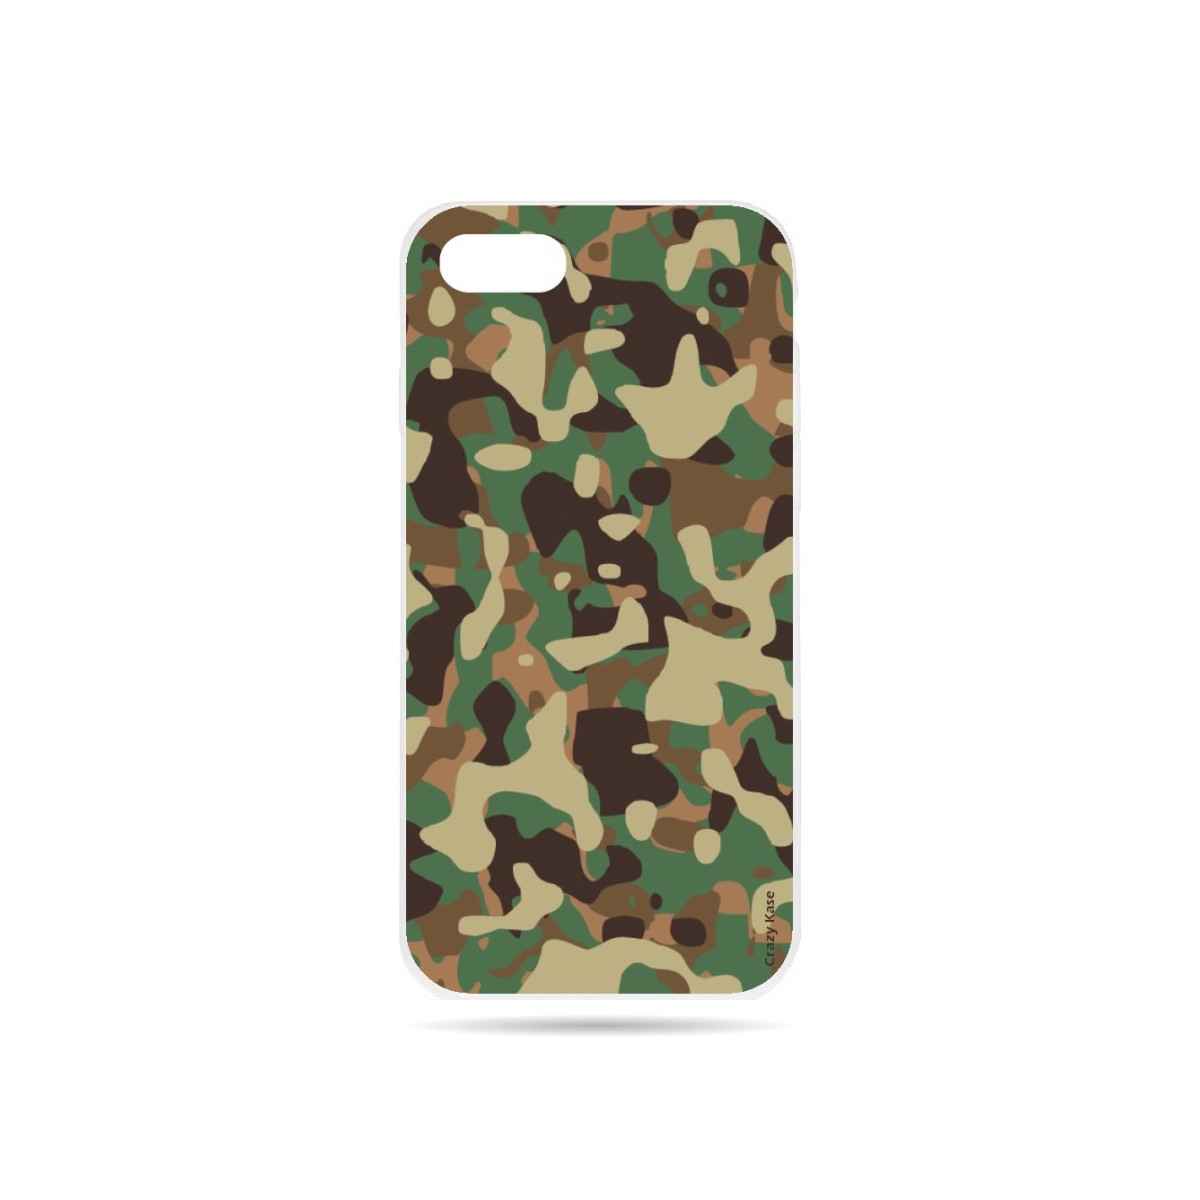 Coque iPhone 7 souple motif Camouflage militaire - Crazy Kase